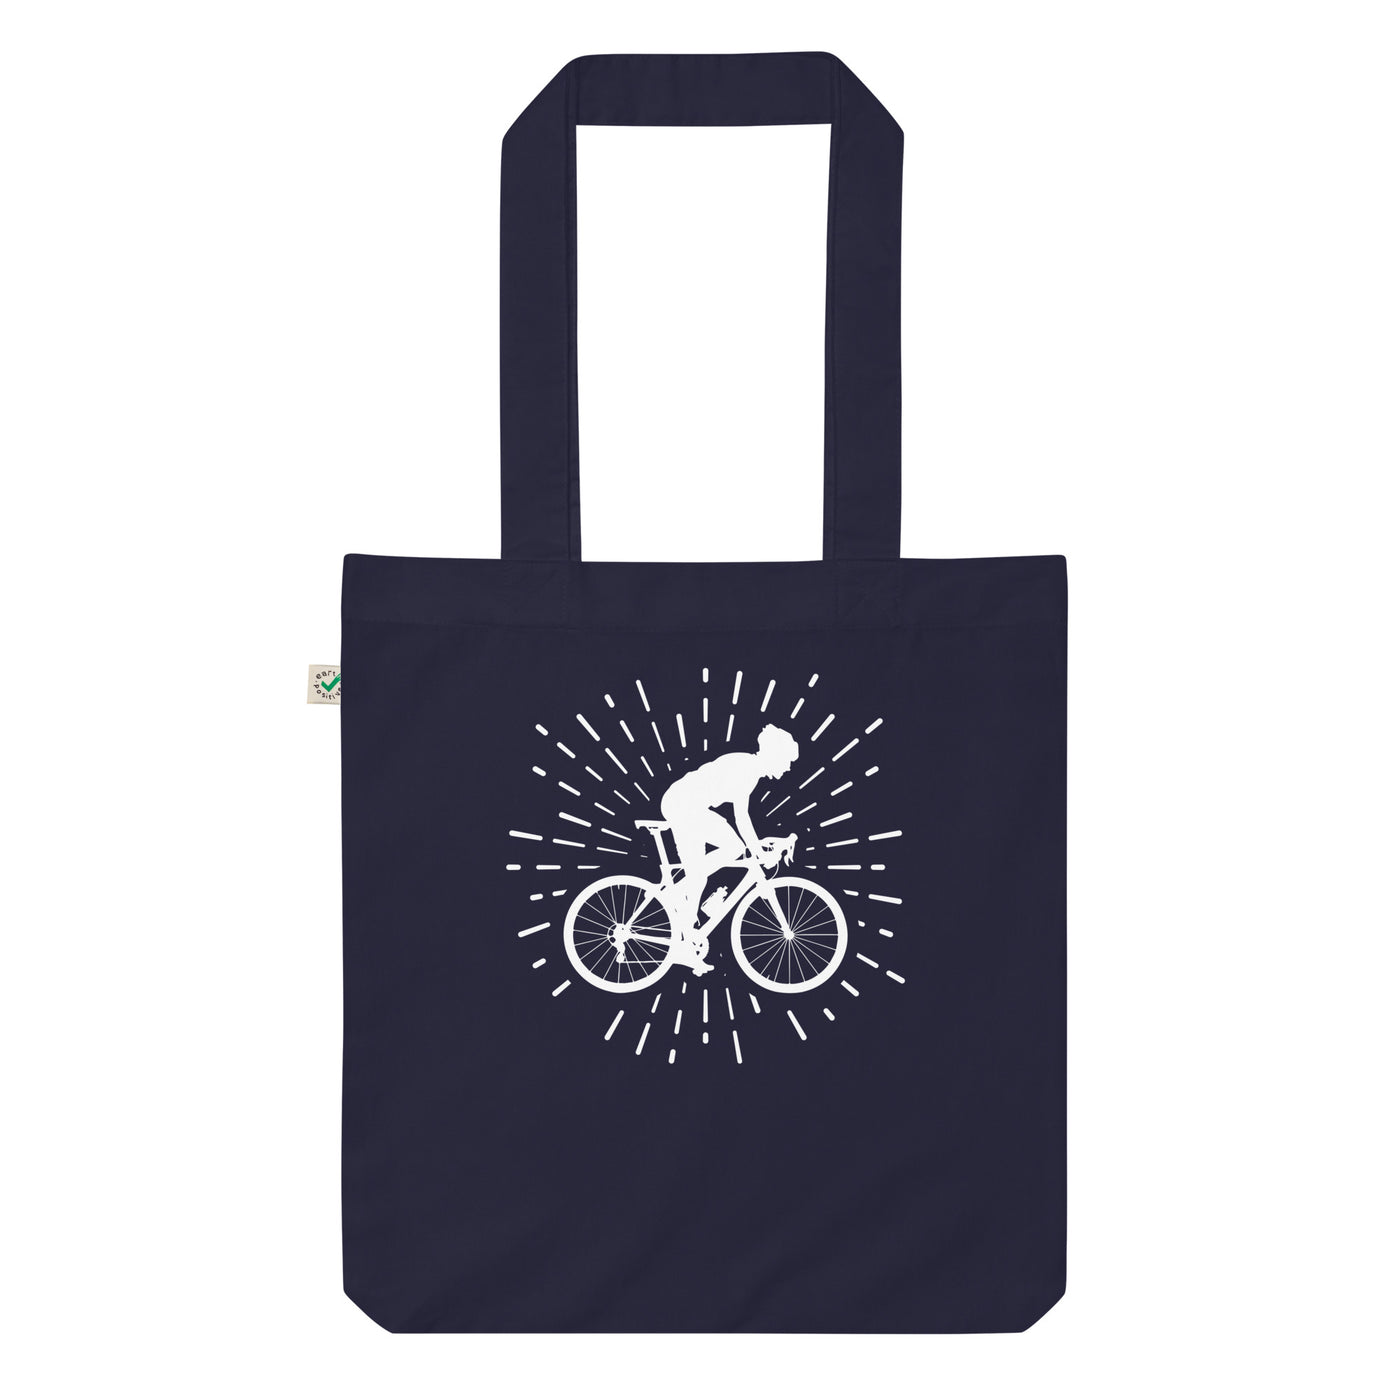 Feuerwerk Und Radfahren 1 - Organic Einkaufstasche fahrrad